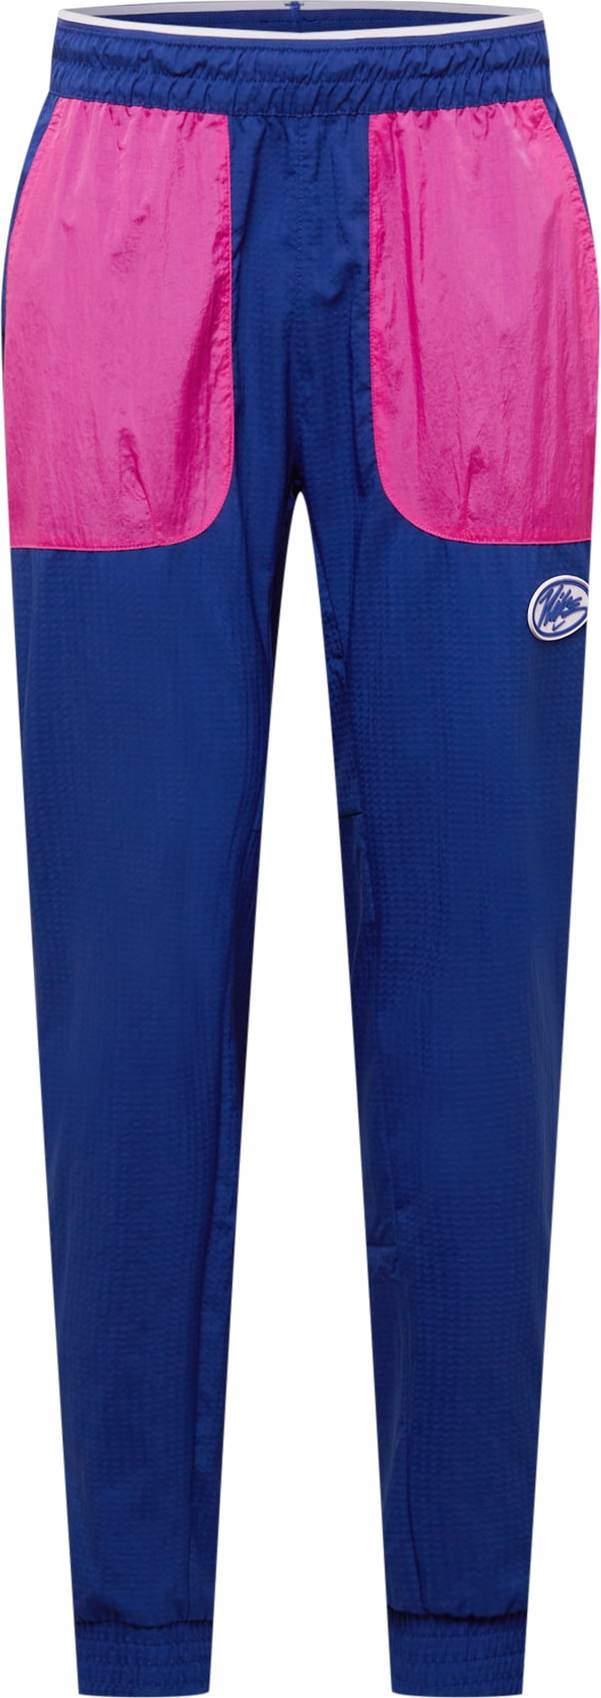 NIKE Sportovní kalhoty královská modrá / pink